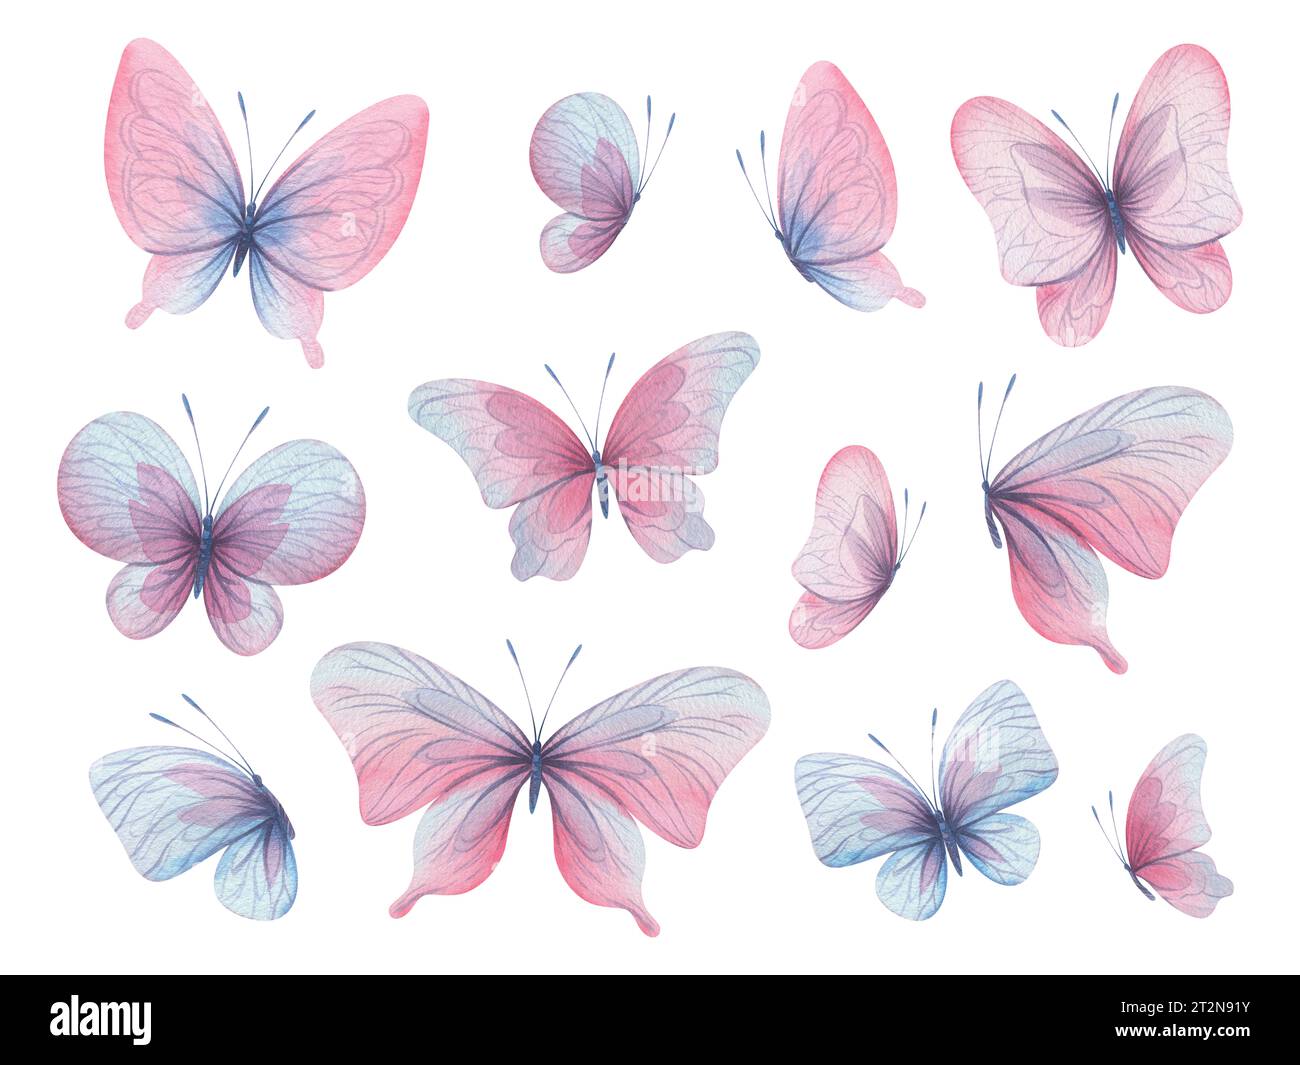 Le farfalle sono rosa, blu, lilla, volanti, delicate con ali e spruzzi di vernice. Illustrazione ad acquerello disegnata a mano. Set di elementi isolati attivato Foto Stock